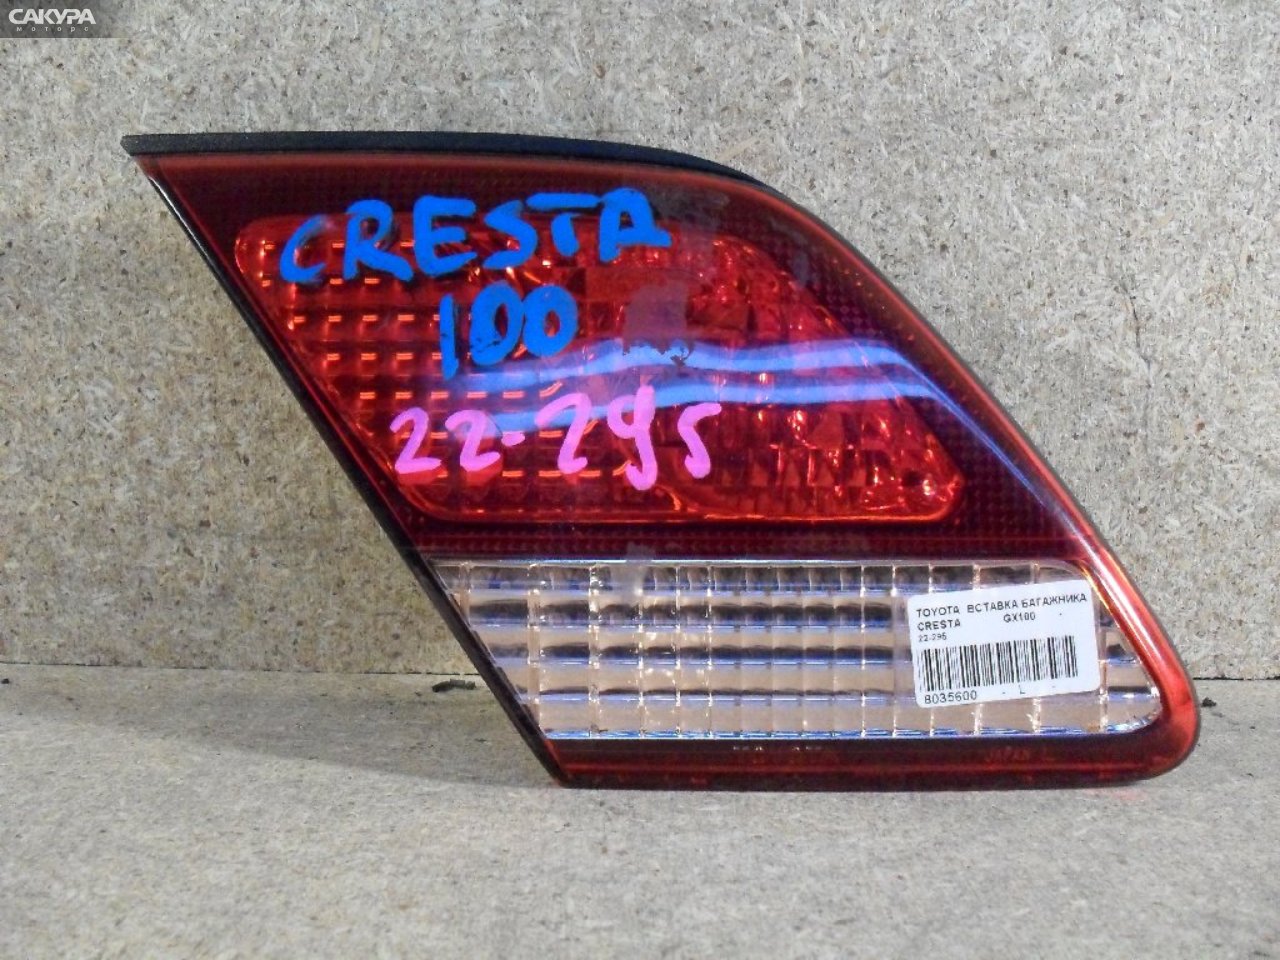 Фонарь вставка багажника левый Toyota Cresta GX100 22-295: купить в Сакура Абакан.